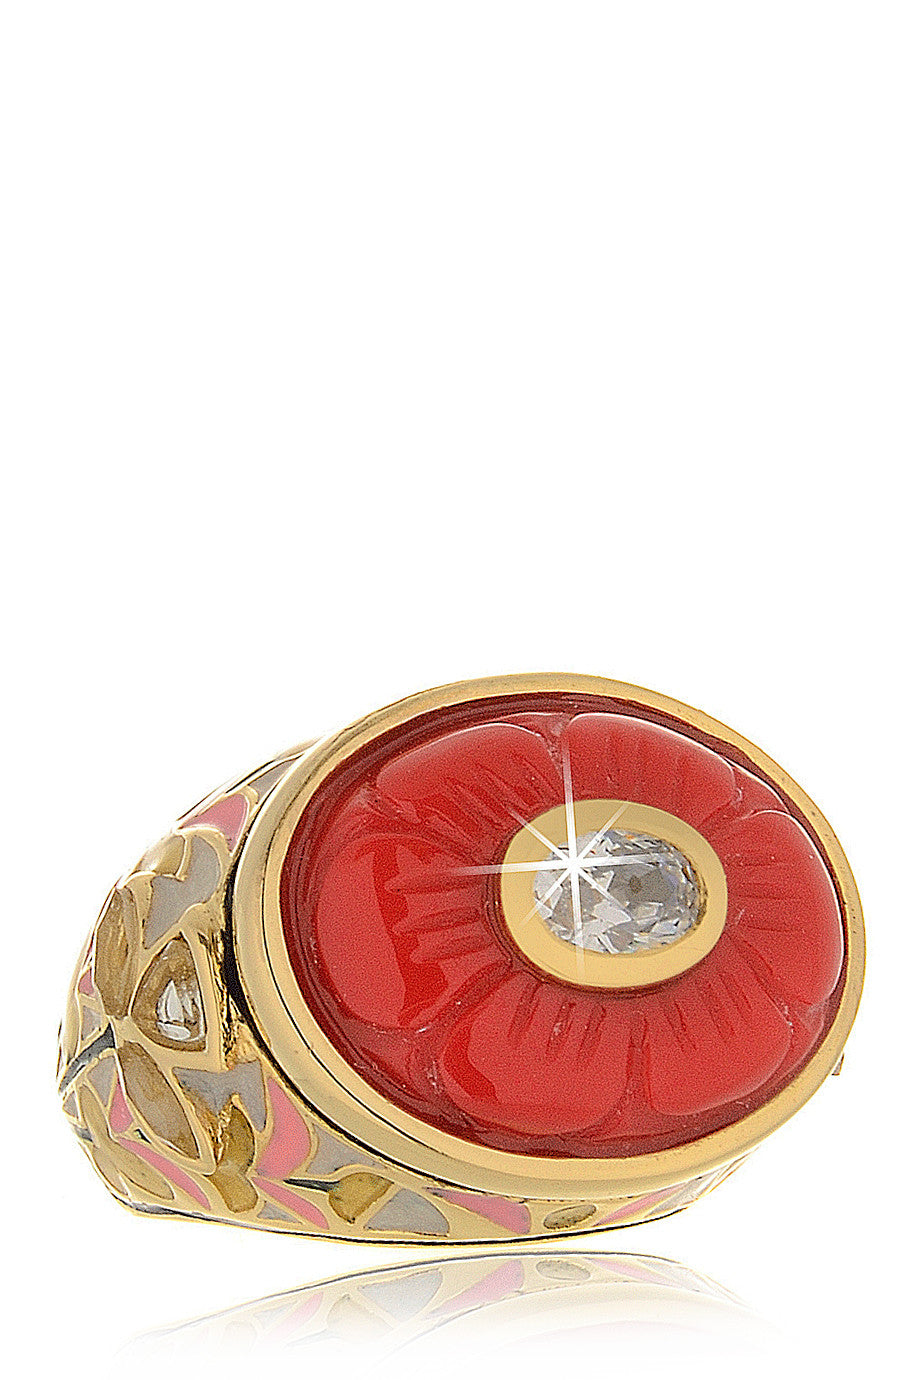 Ροζ Κοραλί Ανάγλυφο Δαχτυλίδι - Isharya | Κοσμήματα